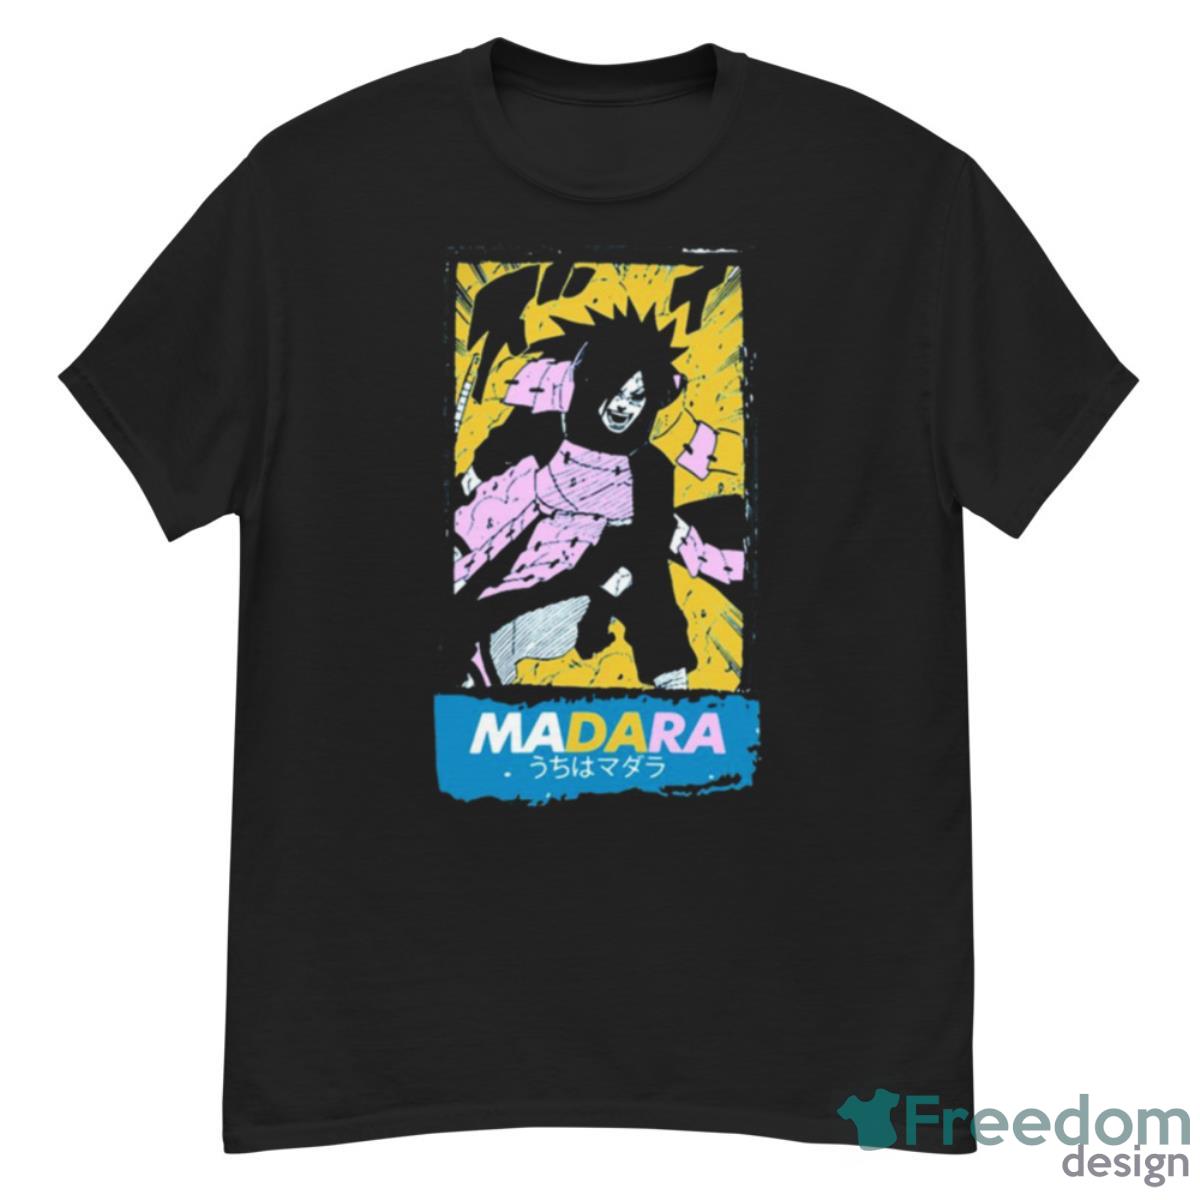 Fan Design Madara Uchiha Evil Naruto Shippuden Shirt - G500 Men’s Classic T-Shirt